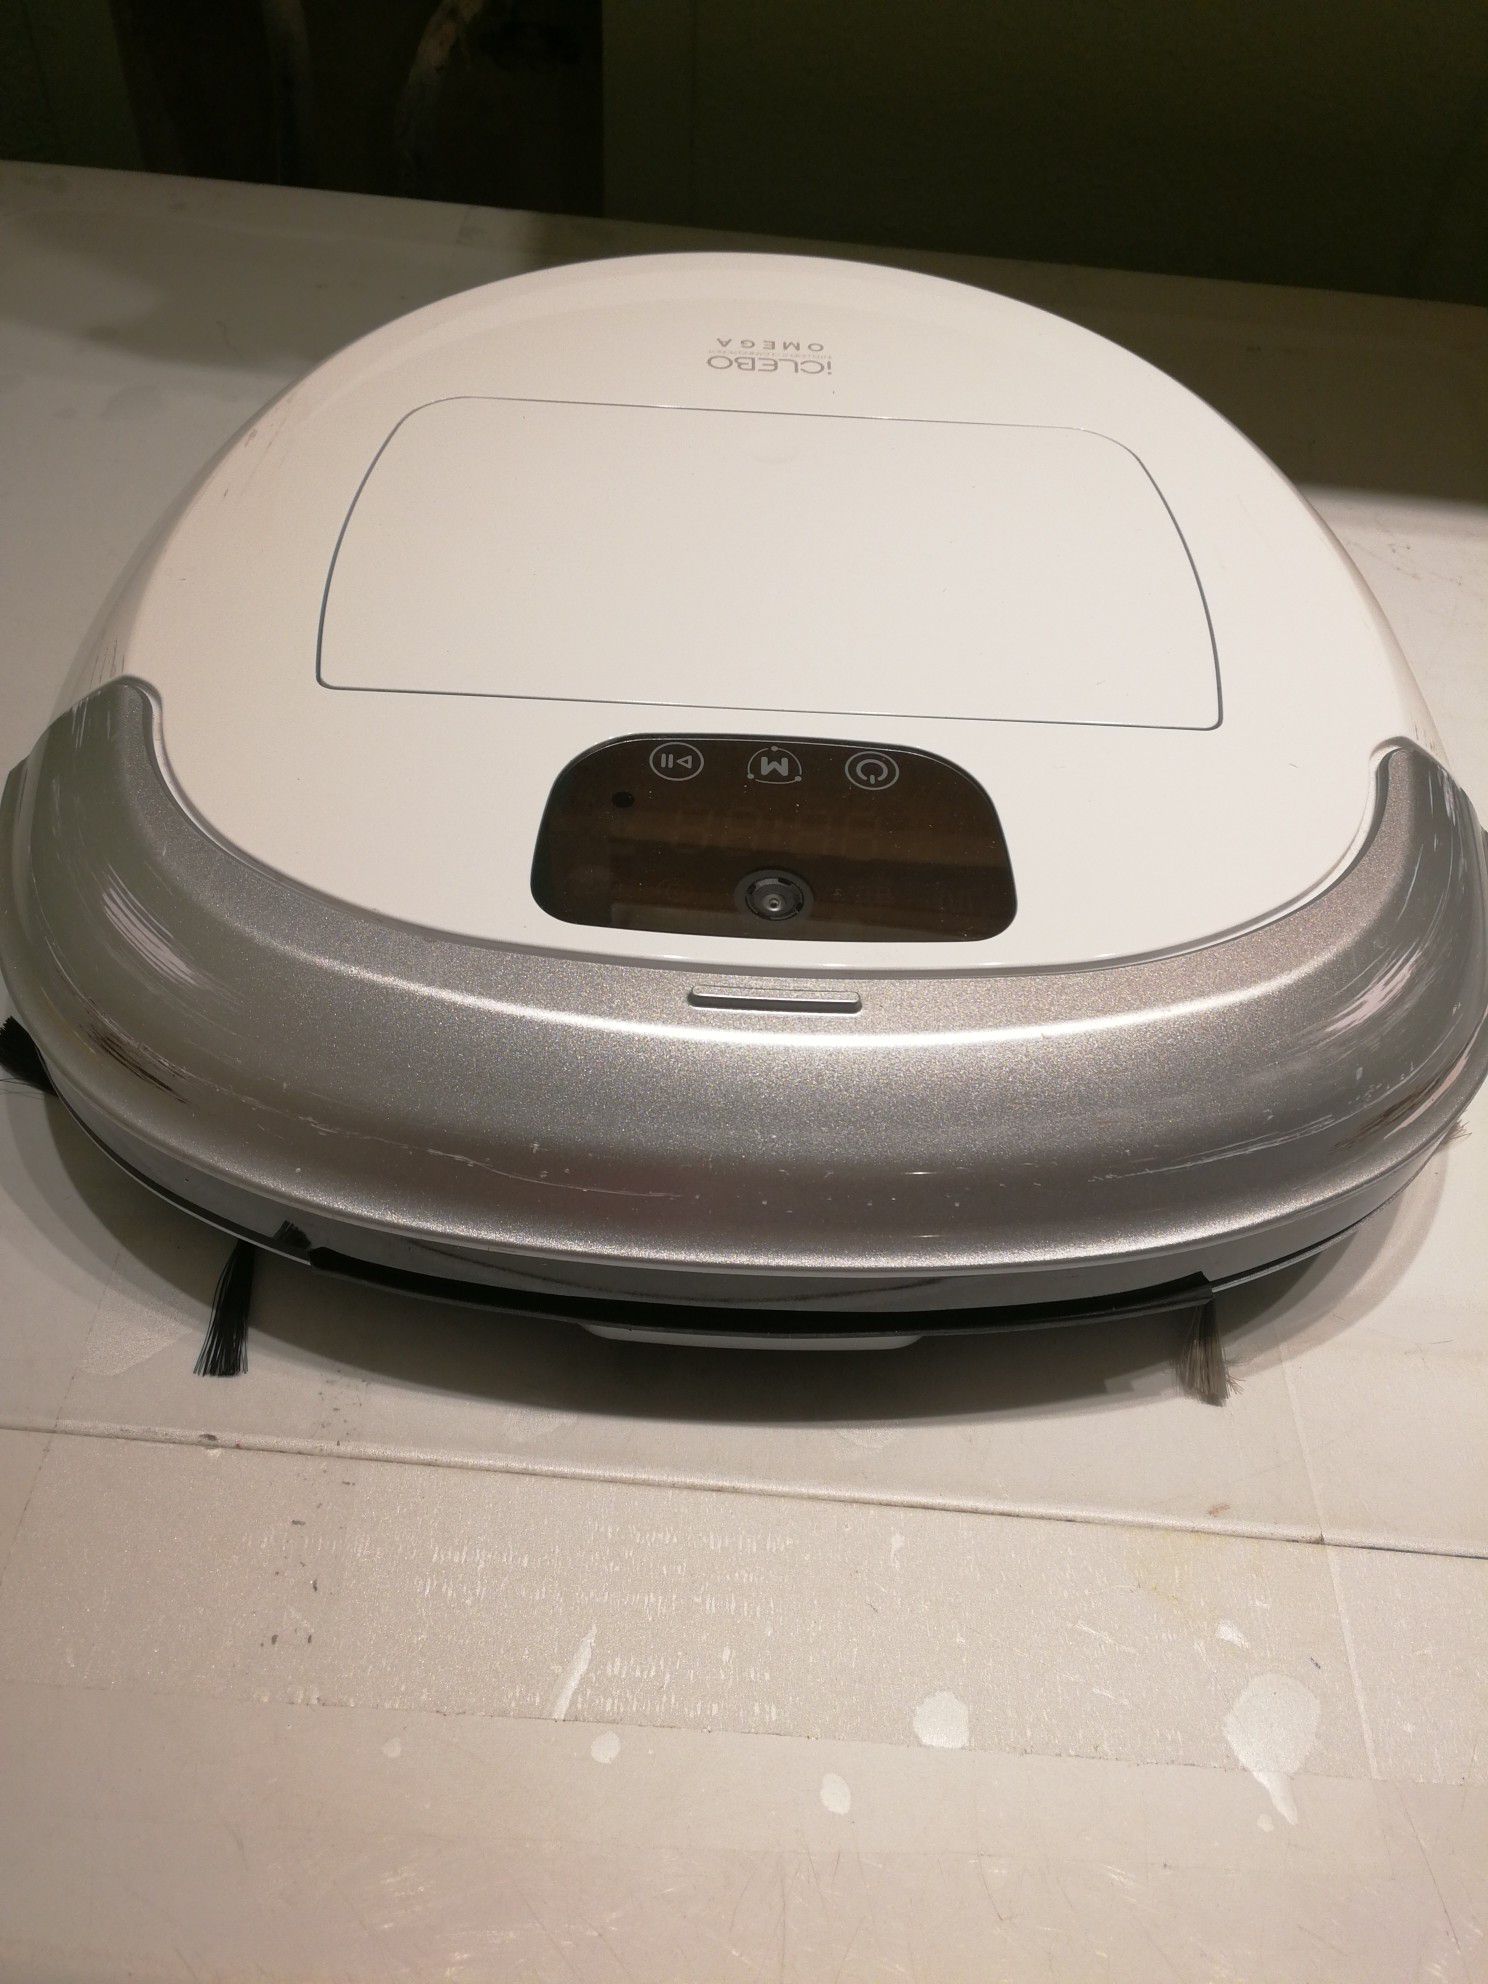 iClebo Omega Robot vacuum